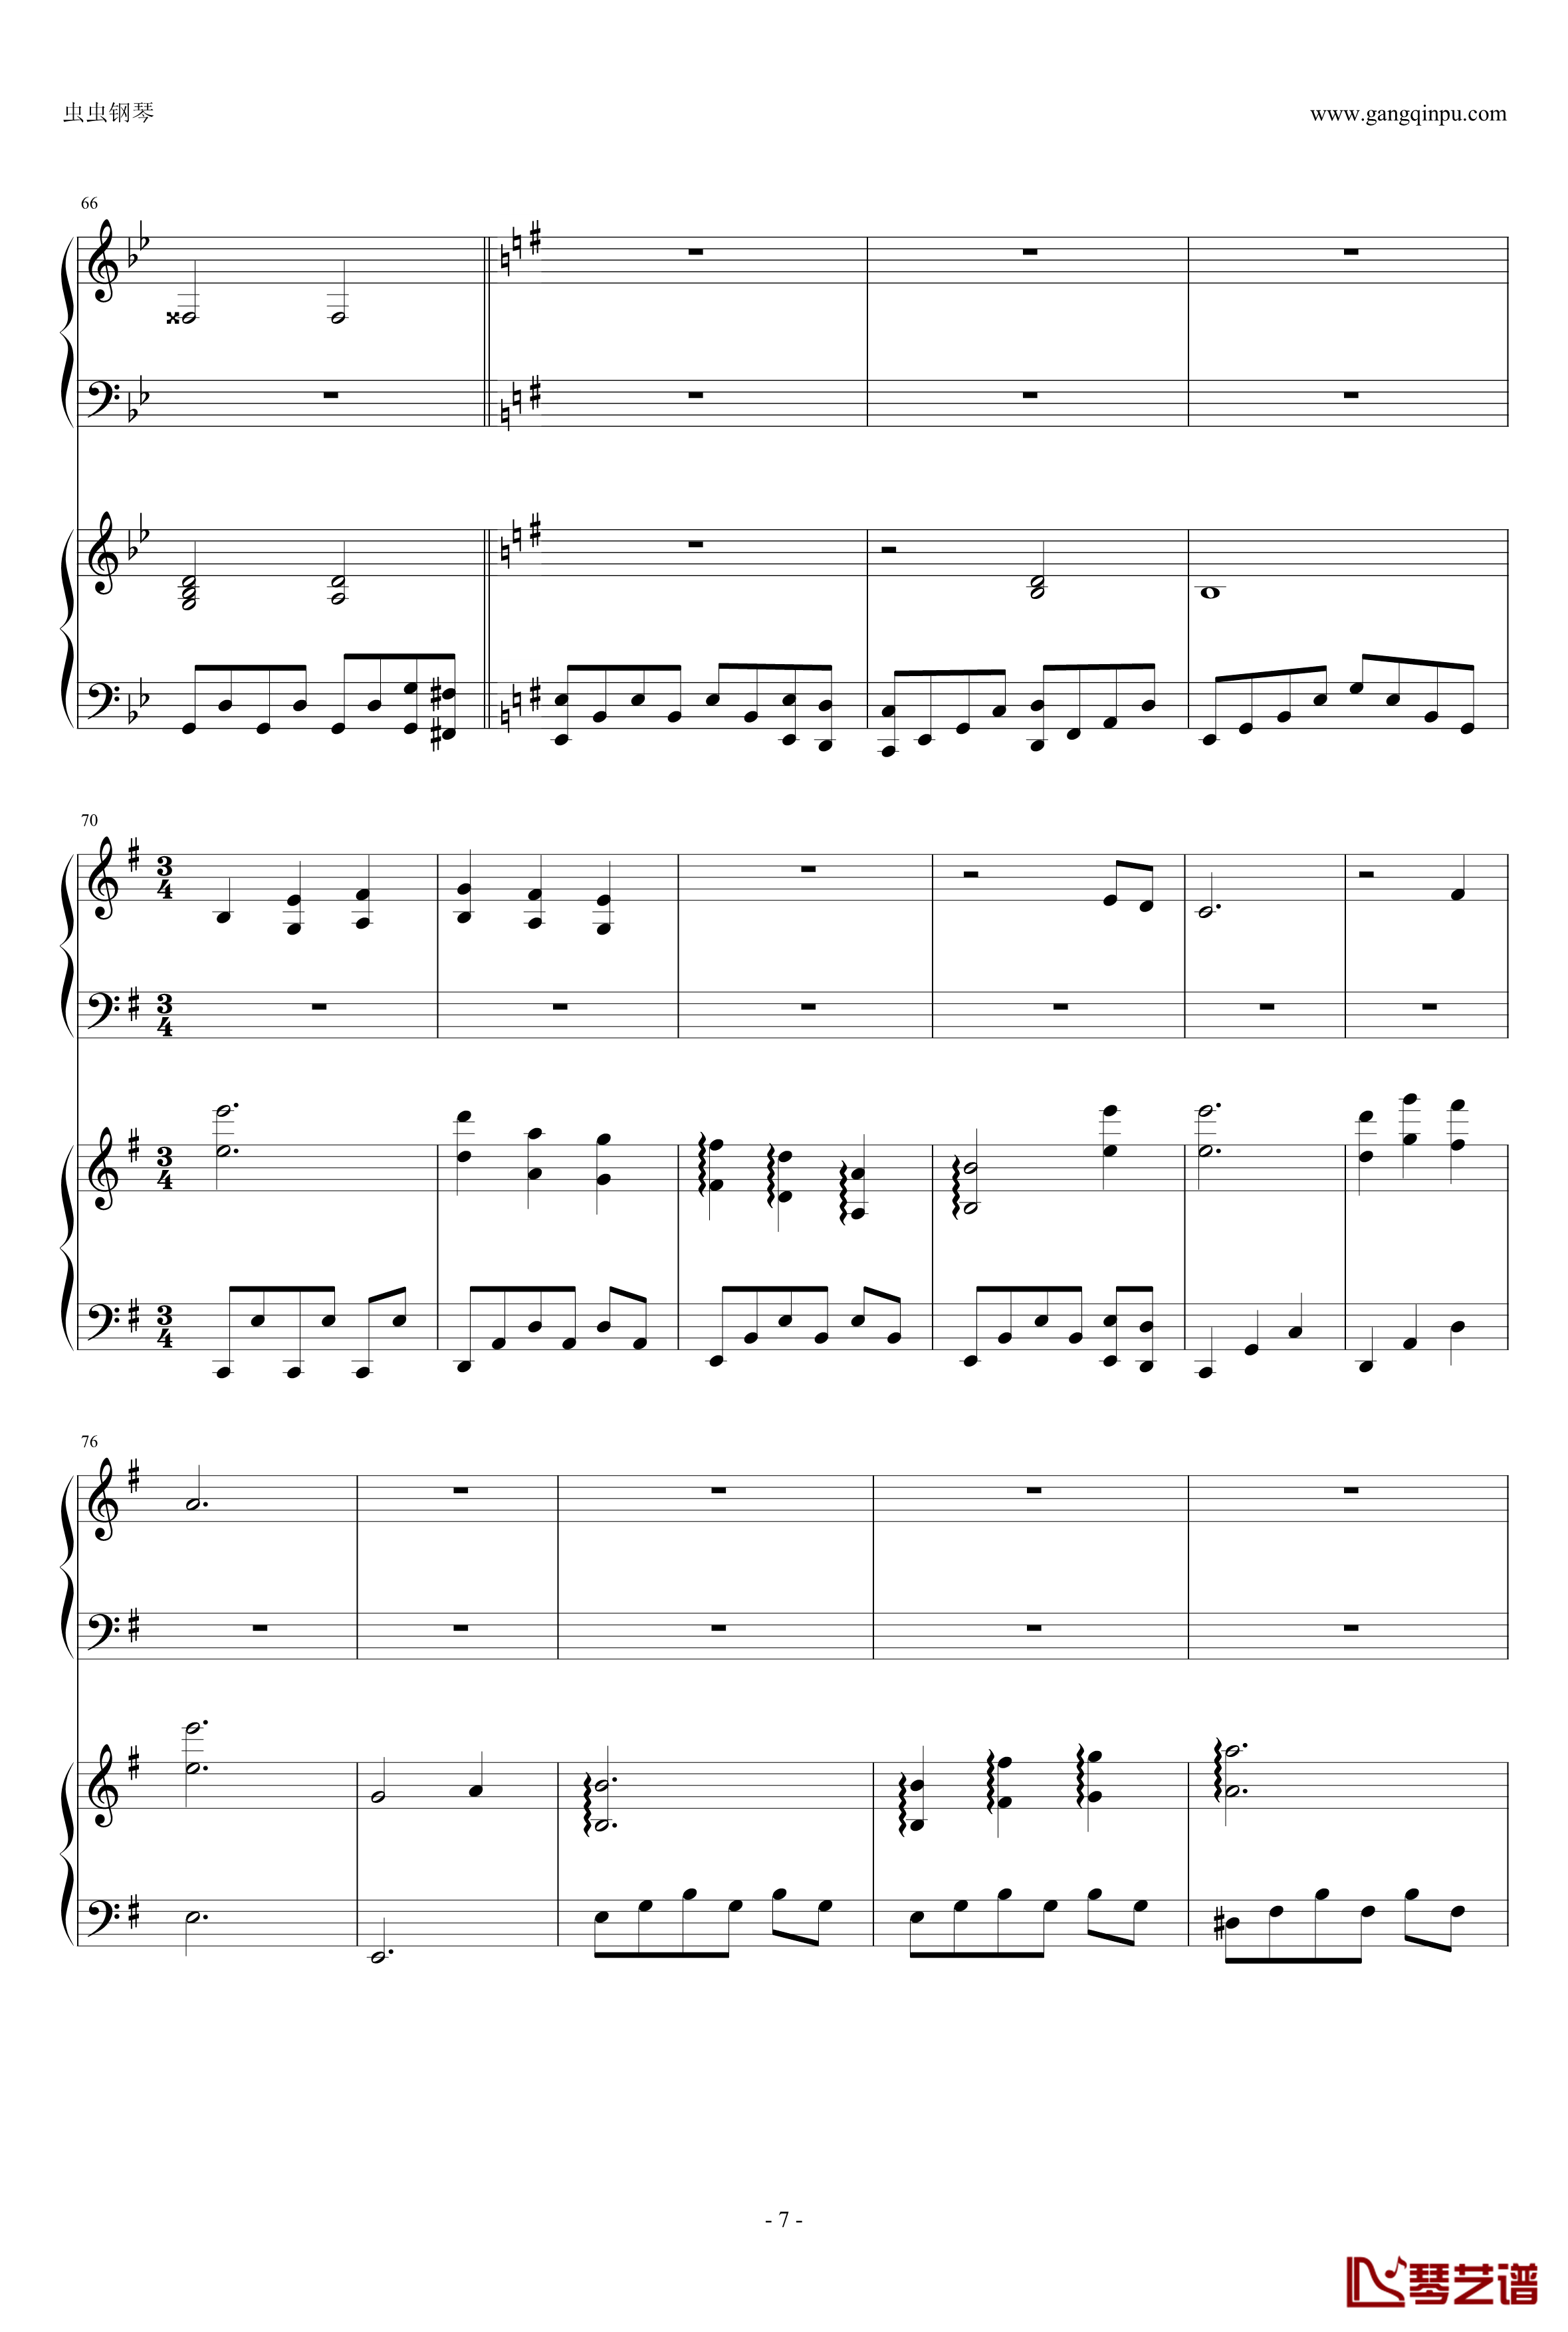 東方連奏曲II Pianoforte钢琴谱-第一部分-东方project7